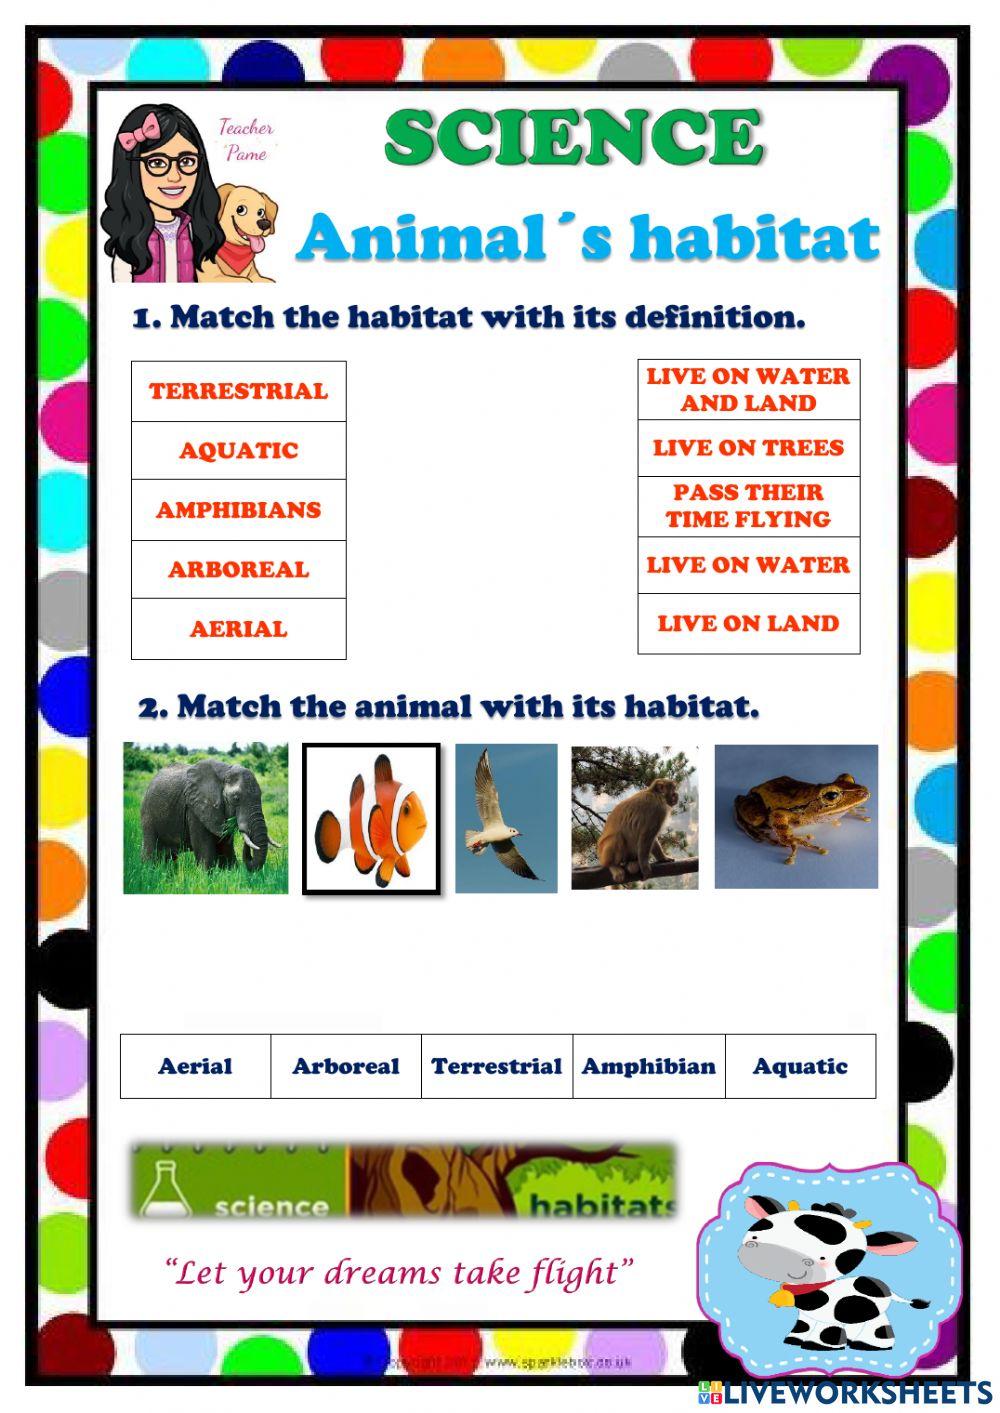 Habitat of animals